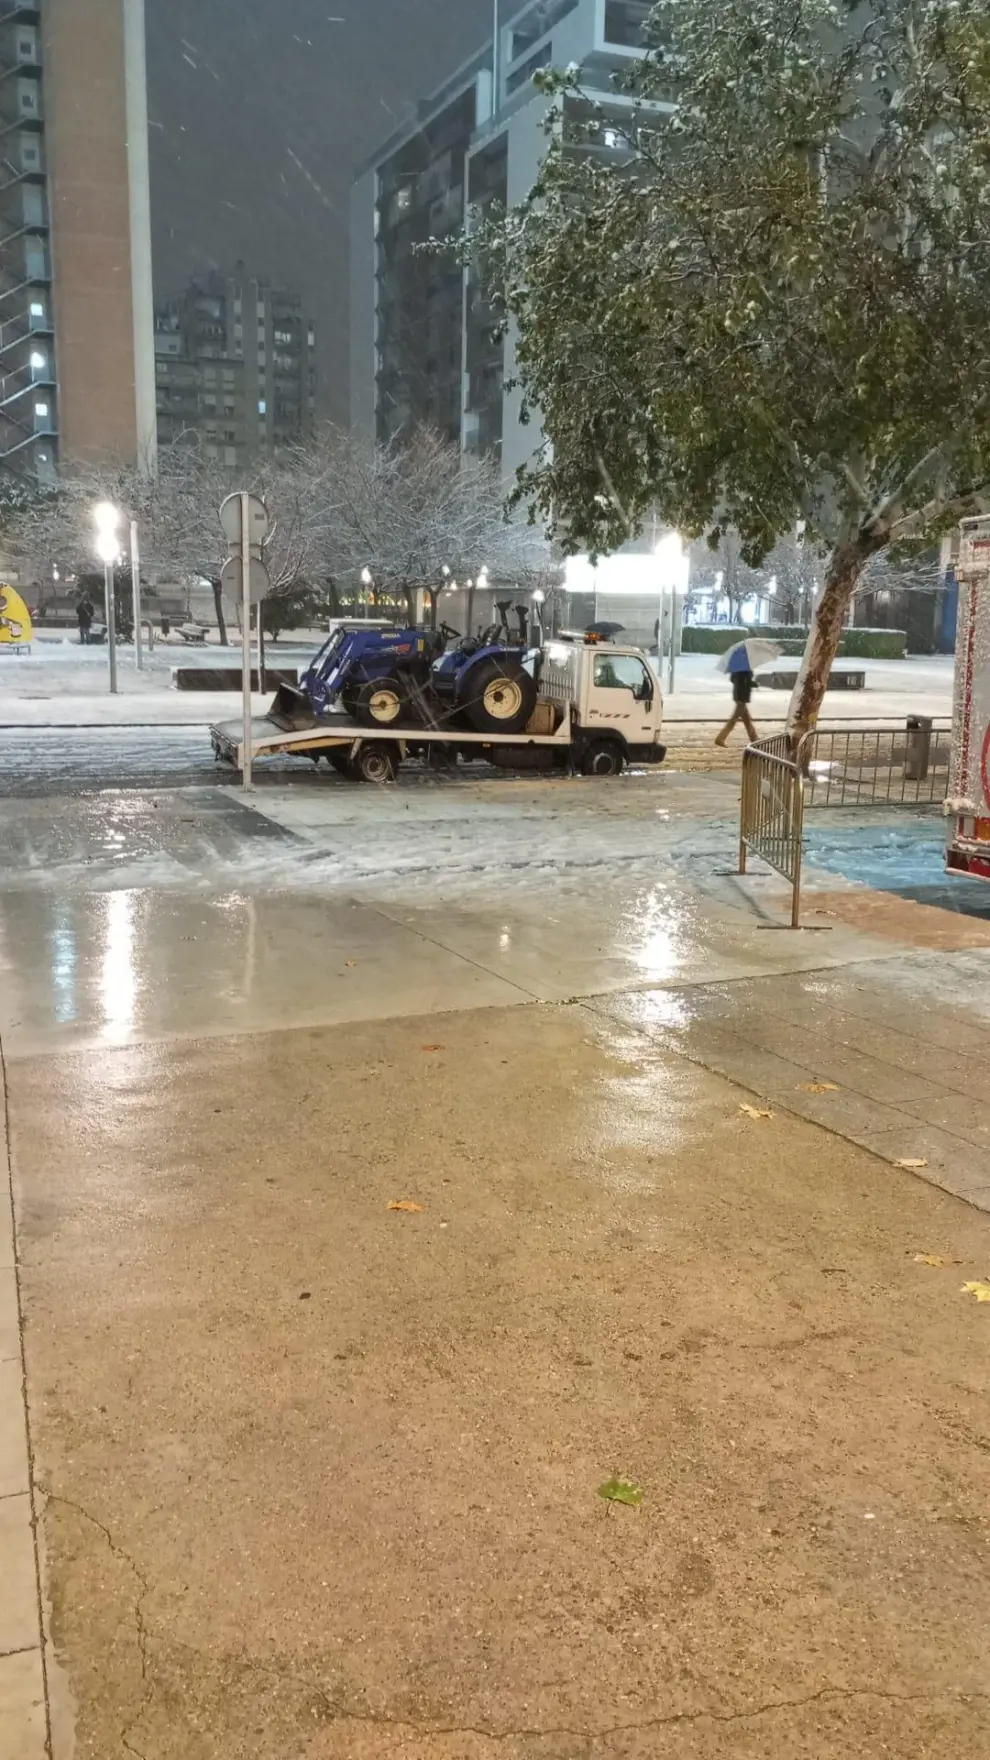 Un tractor llega a La Romareda para quitar la nieve que cubre el campo.